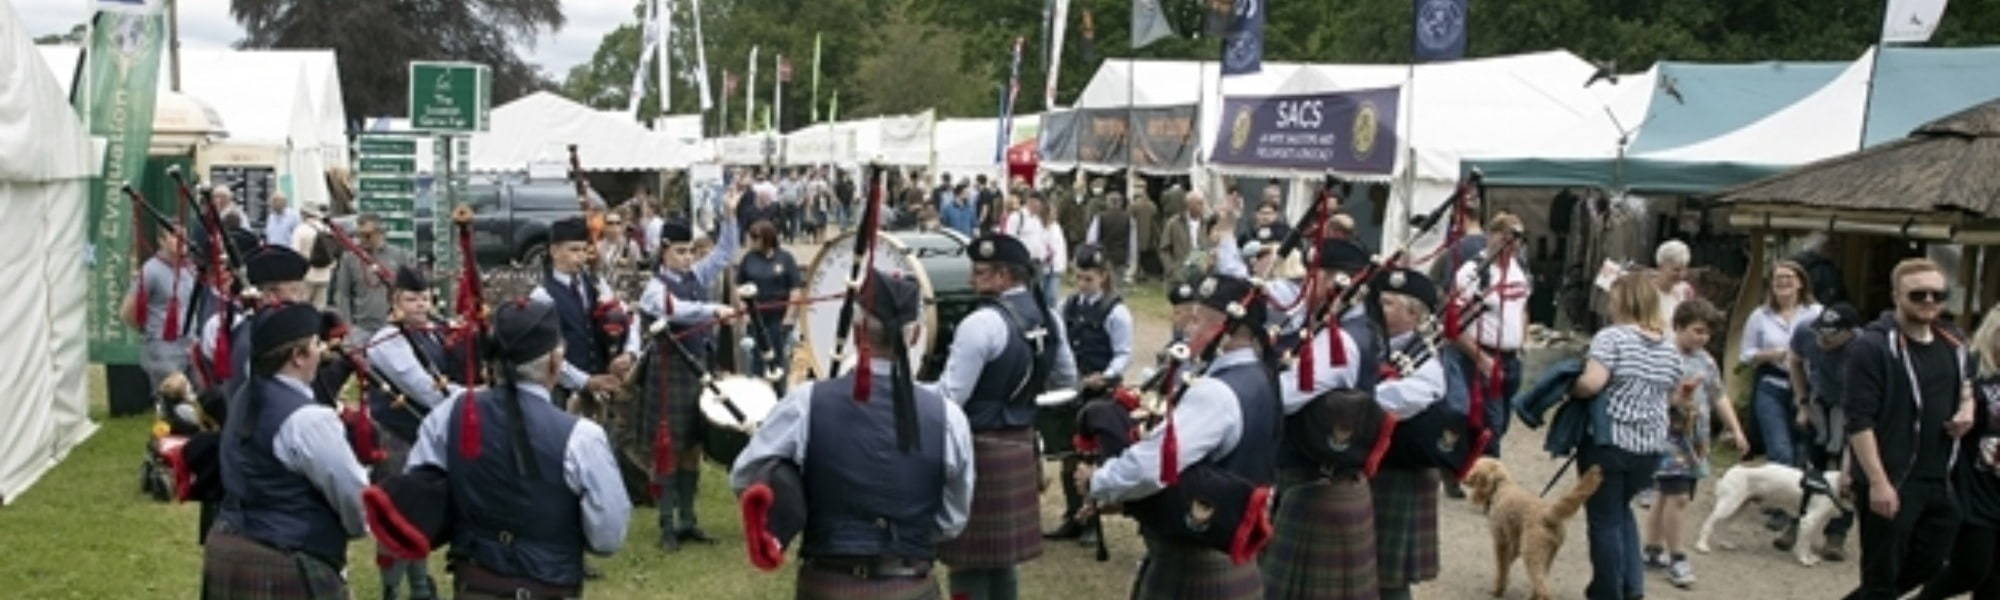 Scottish Game Fair Event Stalls